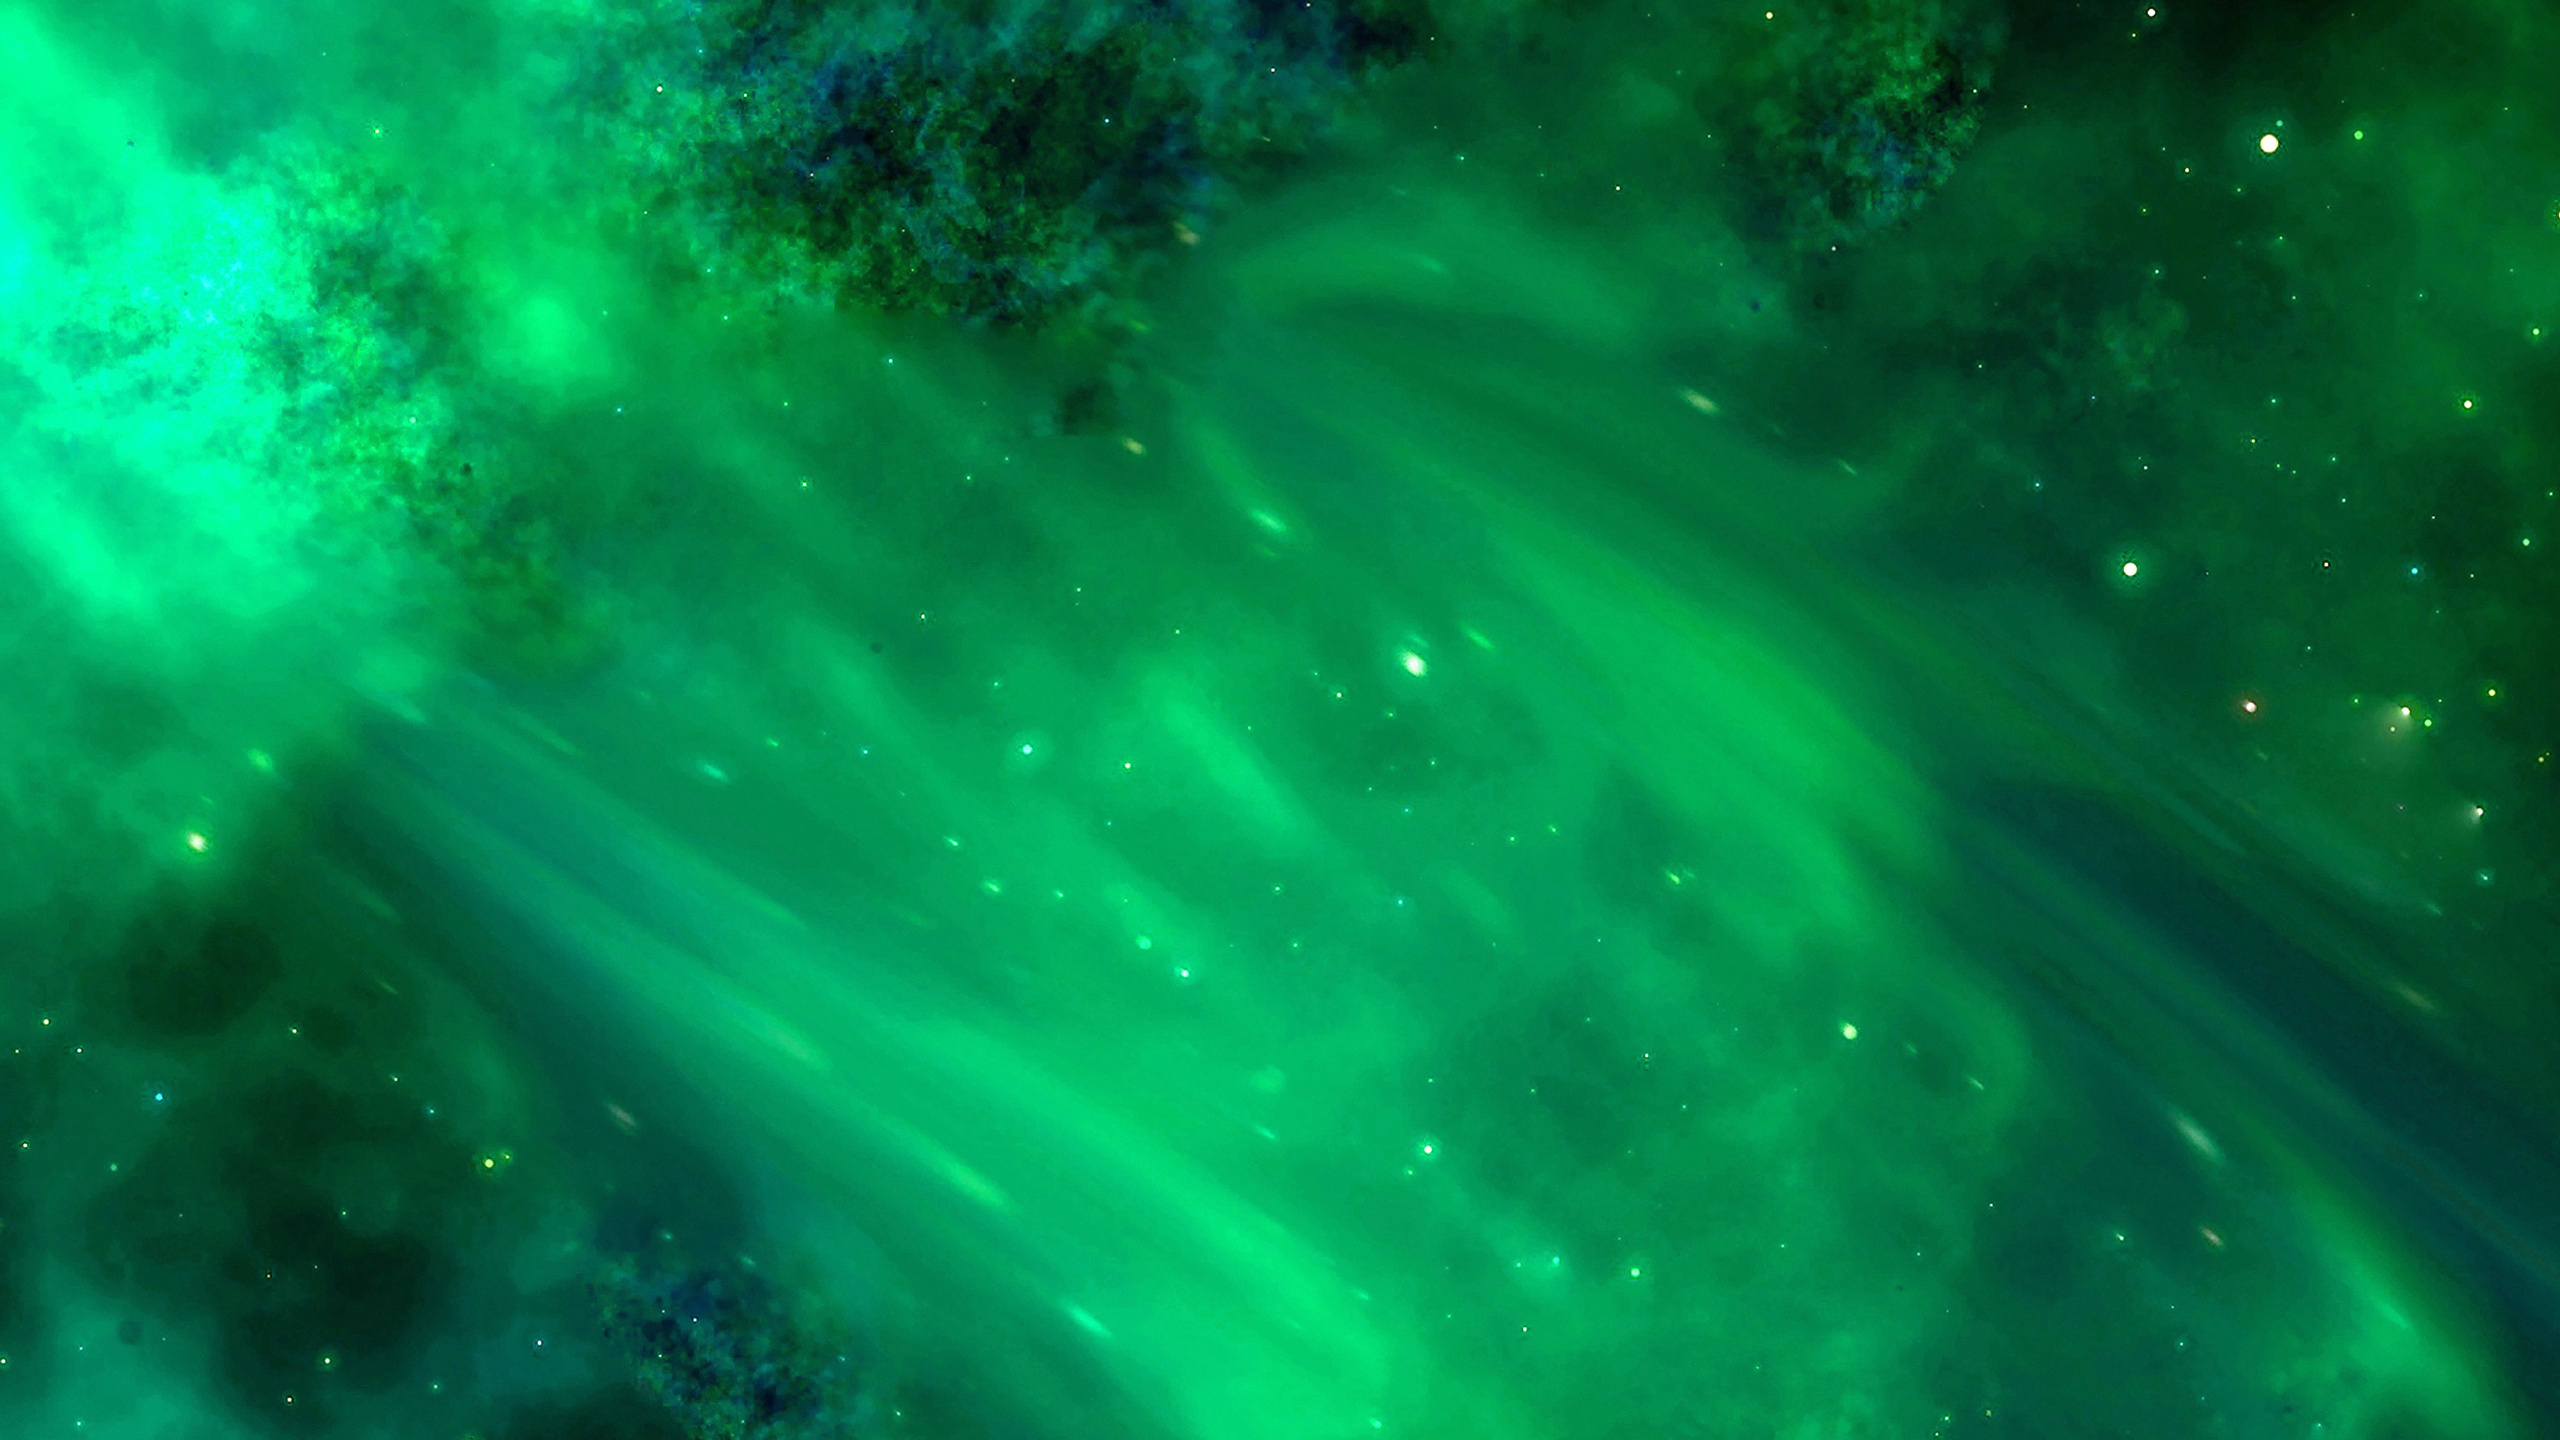 宇宙, 明星, 绿色的, 性质, 天文学对象 壁纸 2560x1440 允许